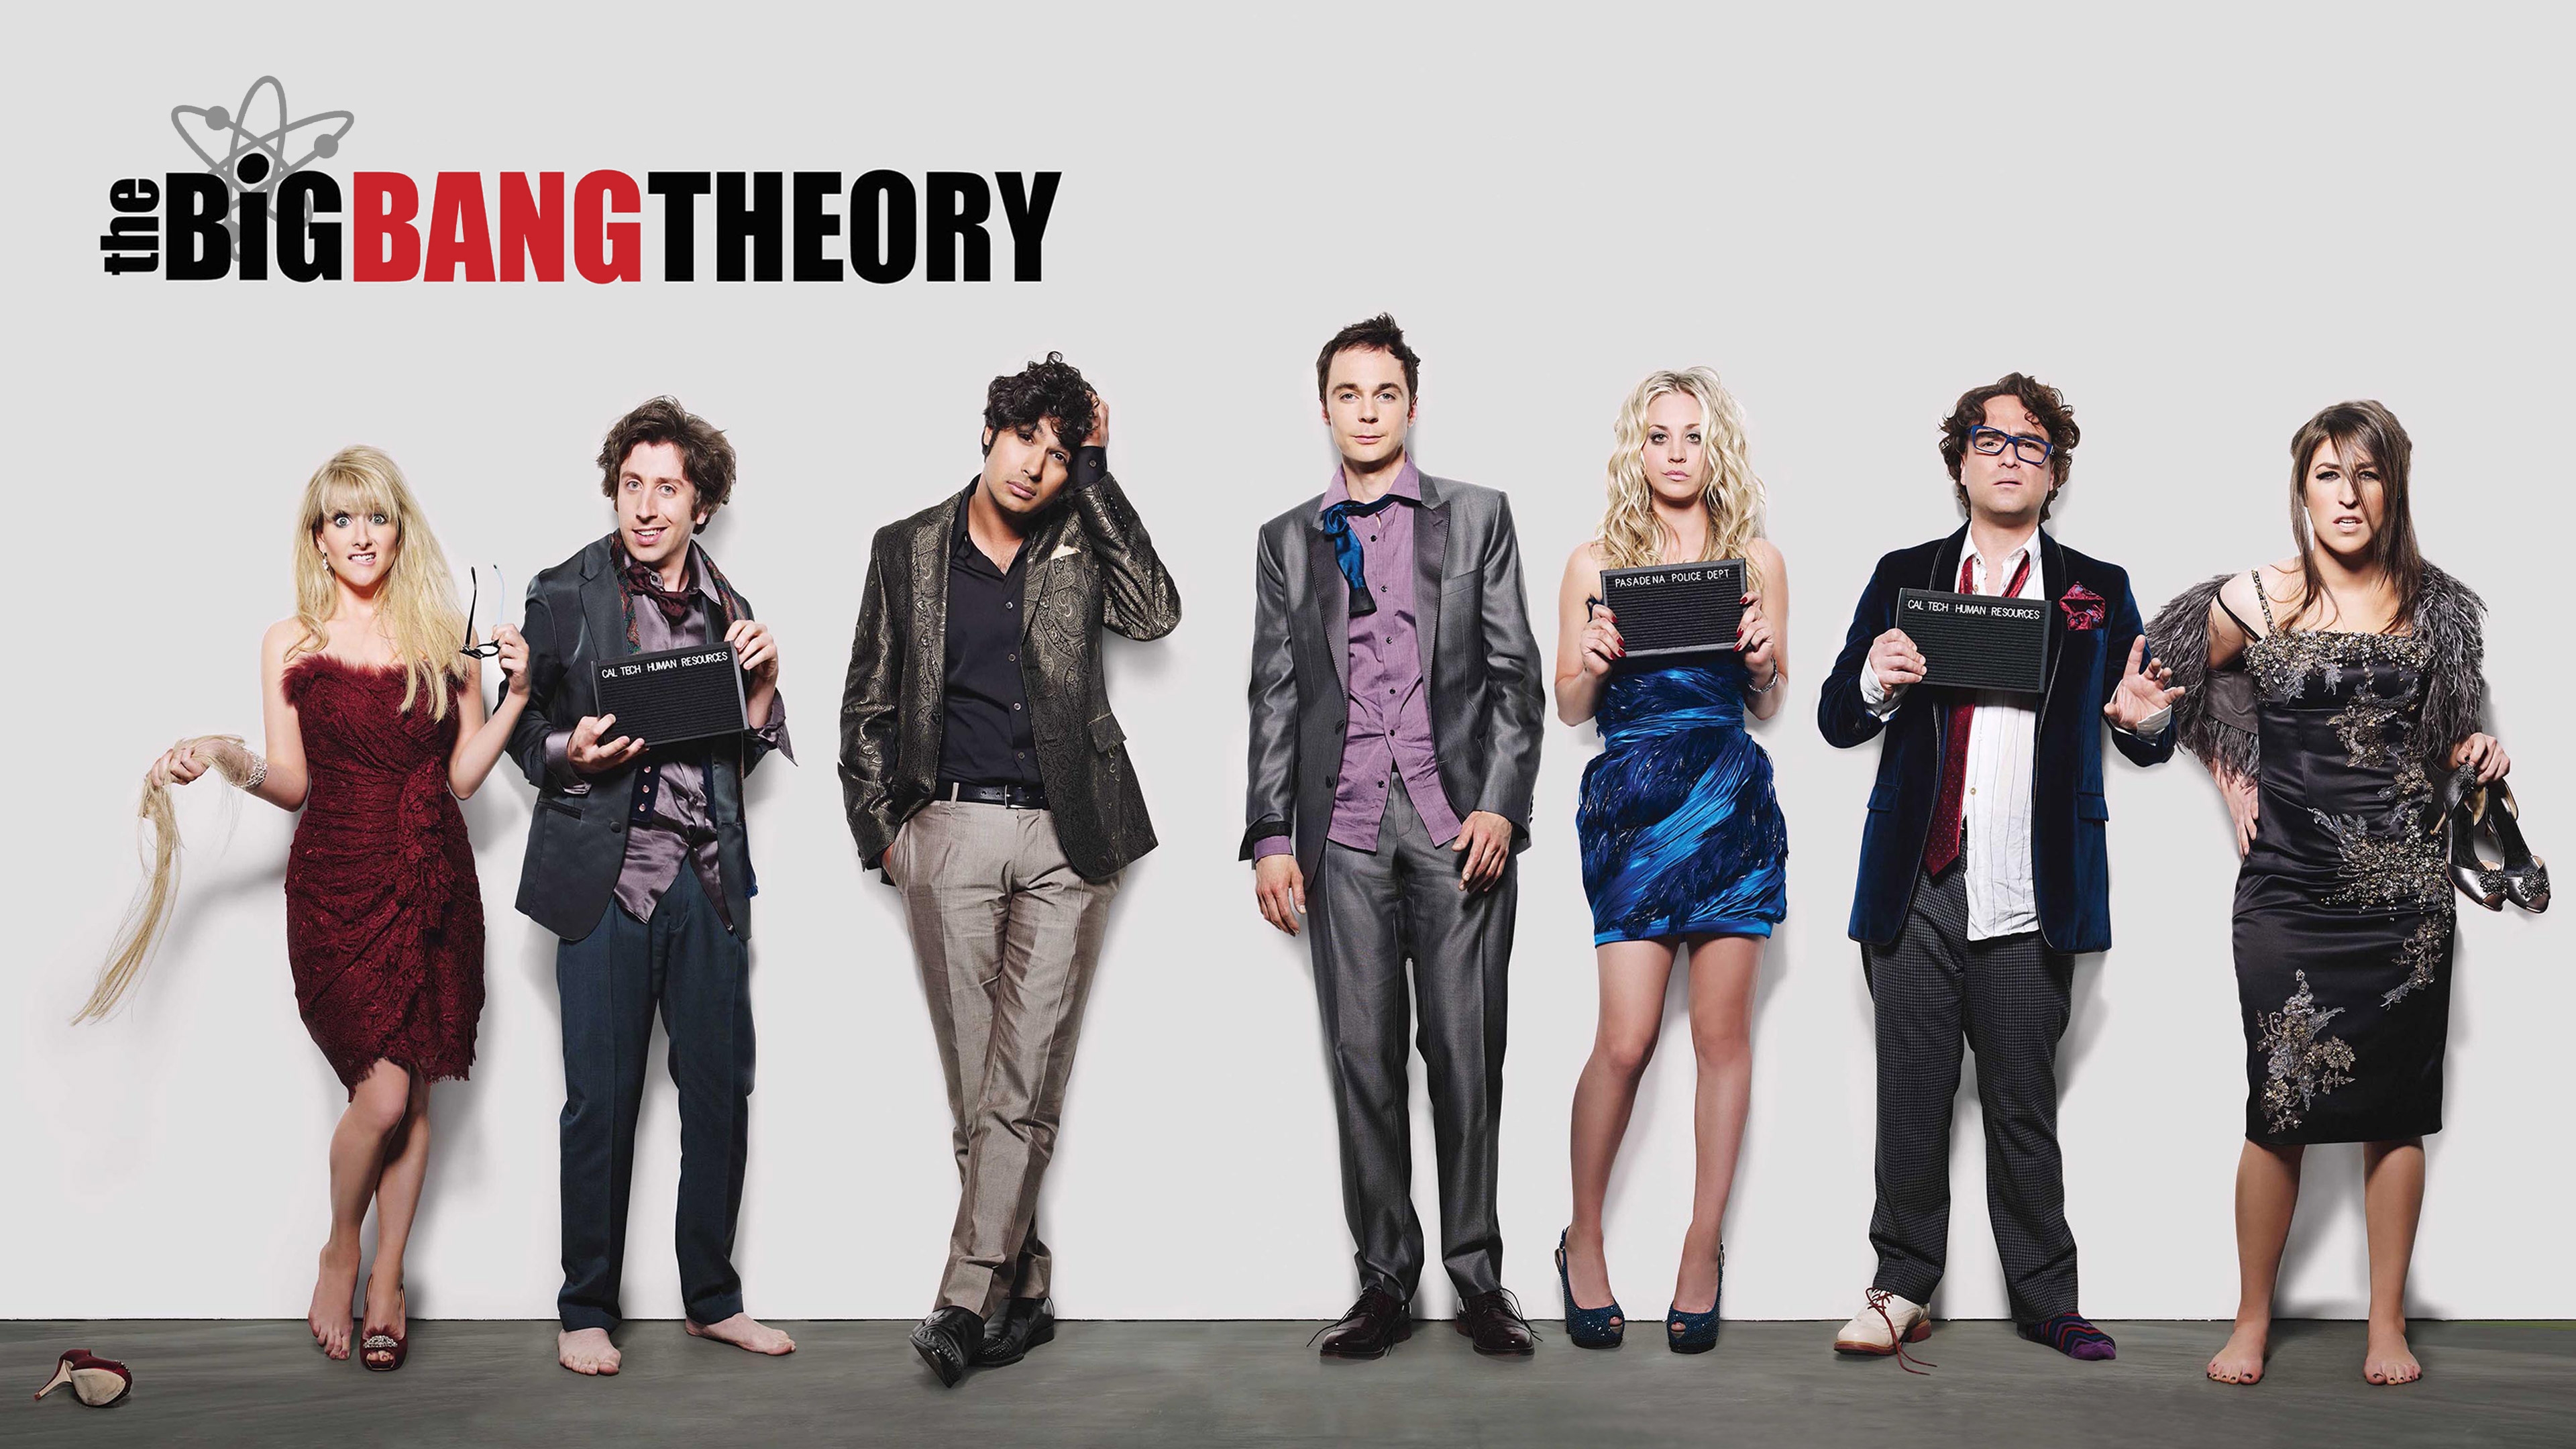 4k The Big Bang Theory Wallpaper Background Image